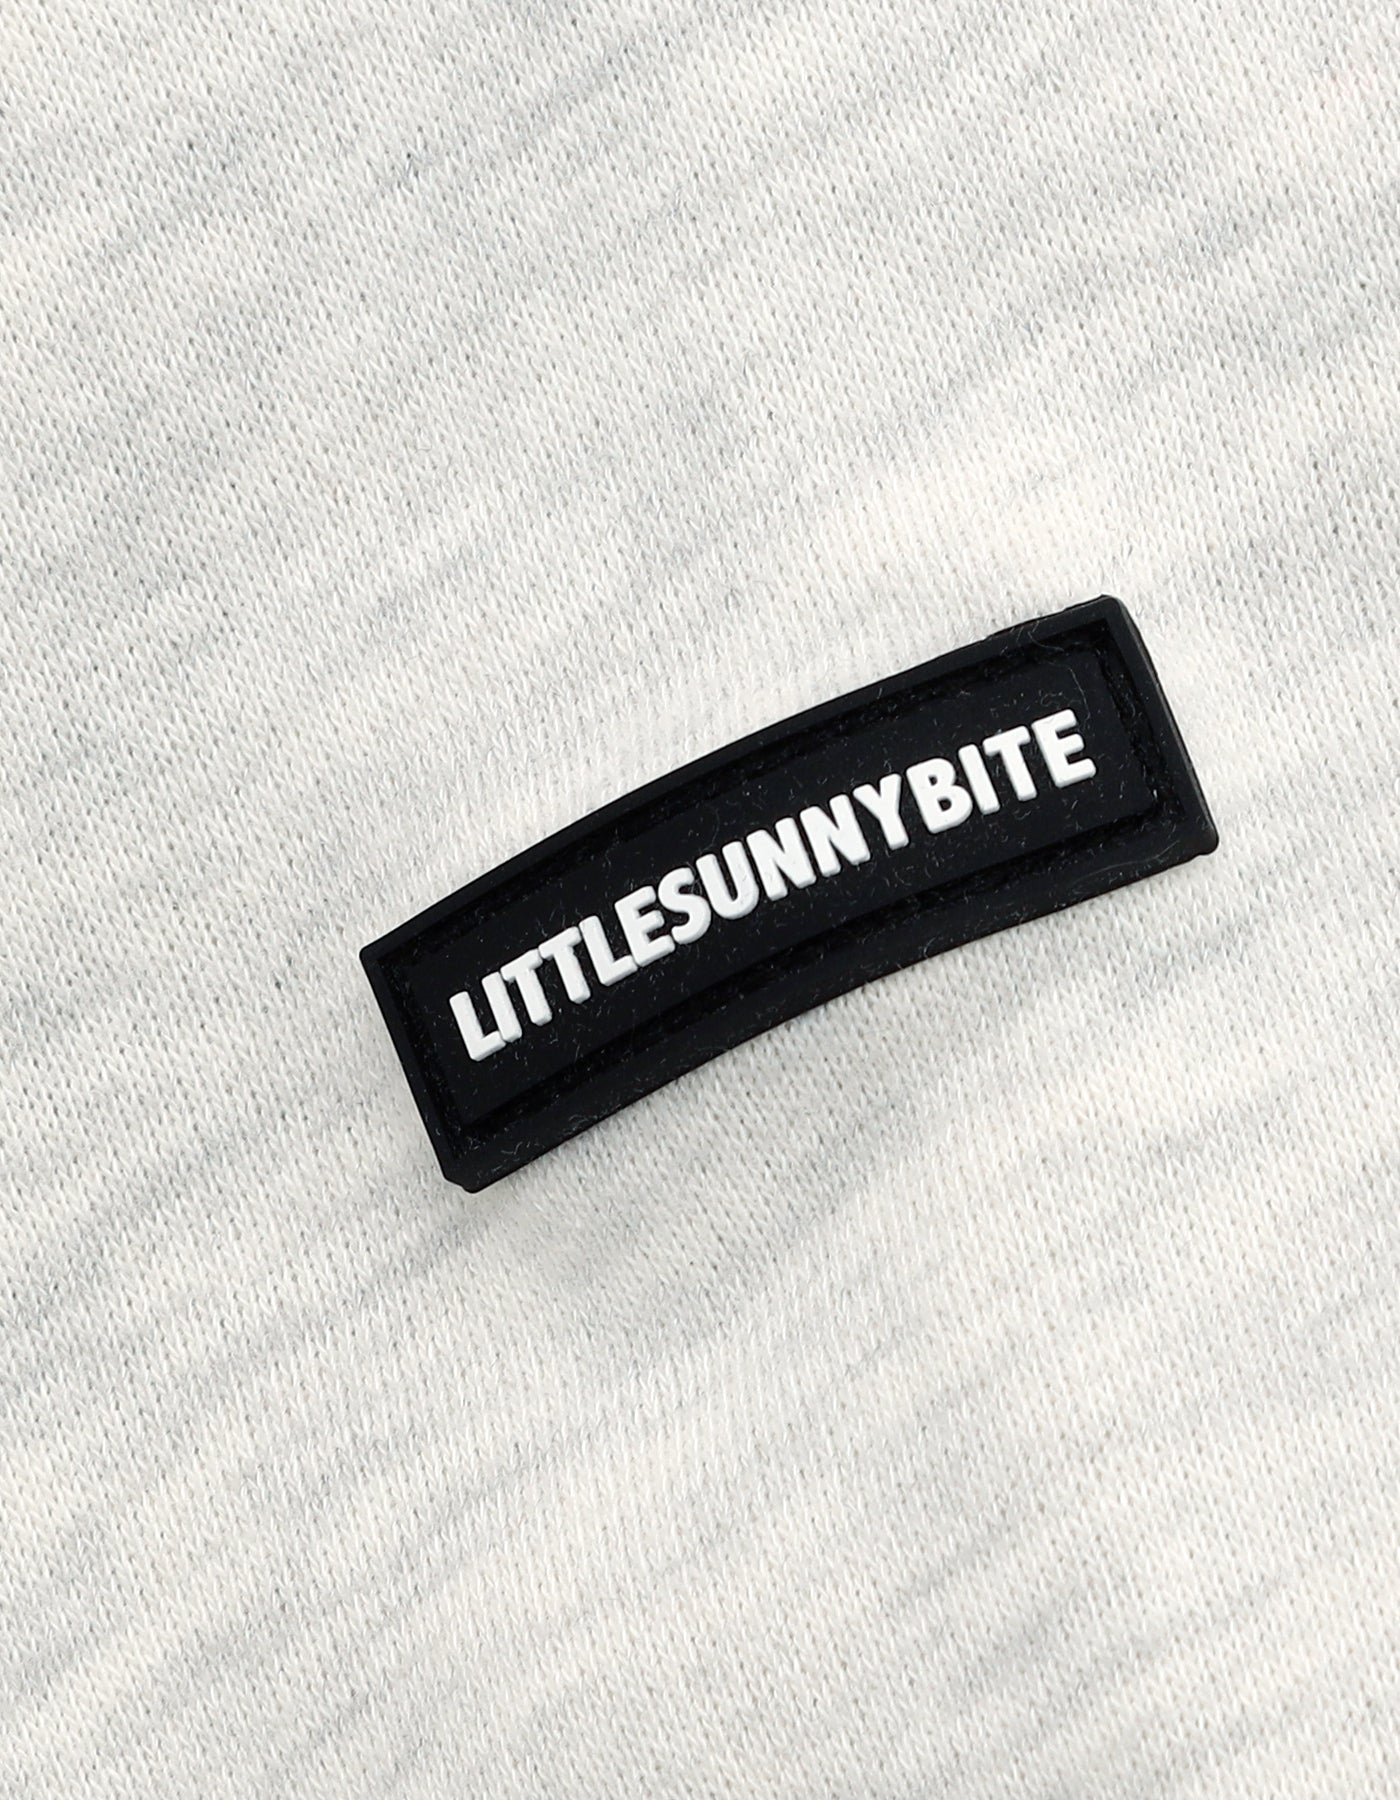 little sunny bite (リトルサニーバイト)little sunny bite fake 